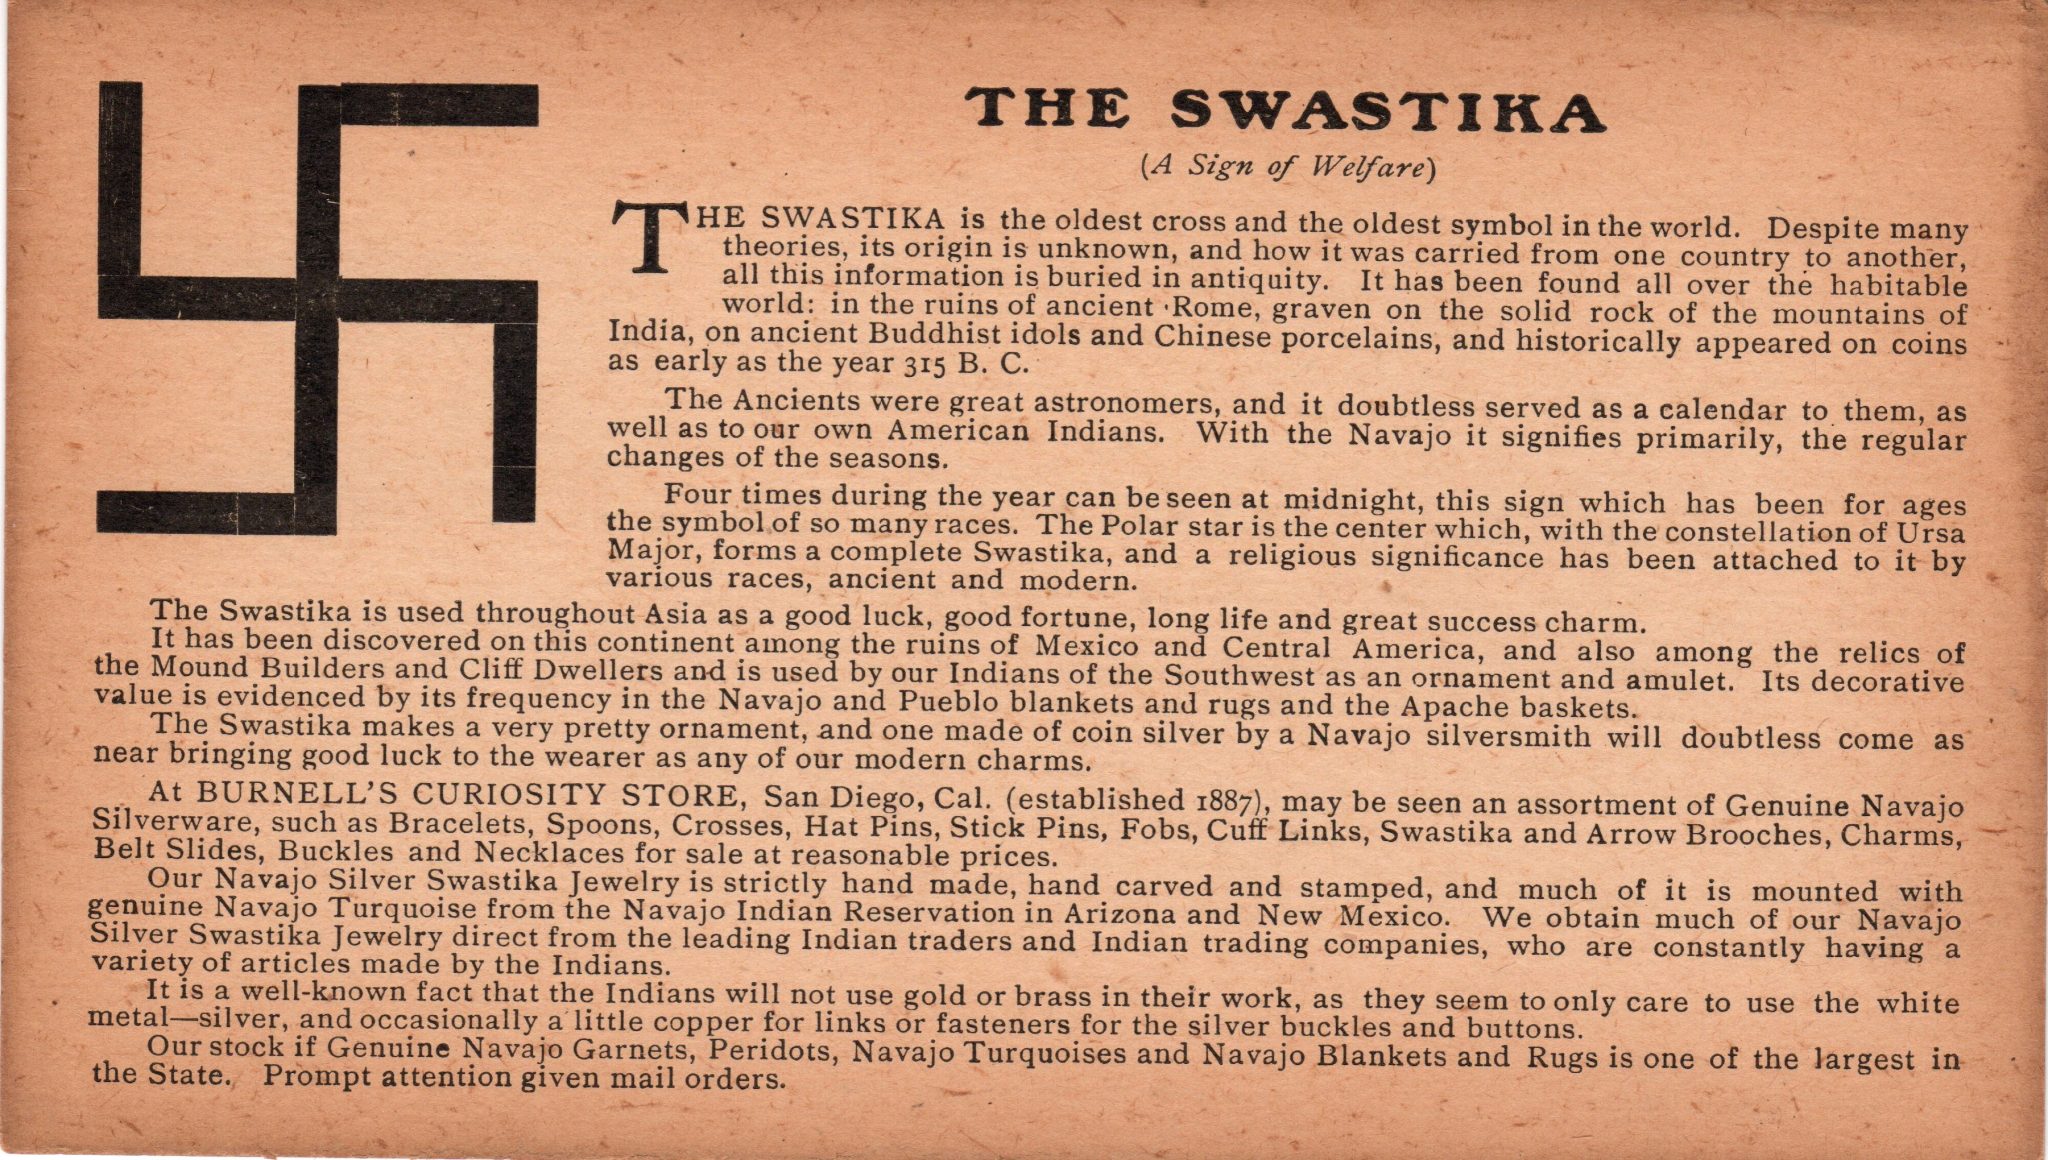 The Swastika explanation